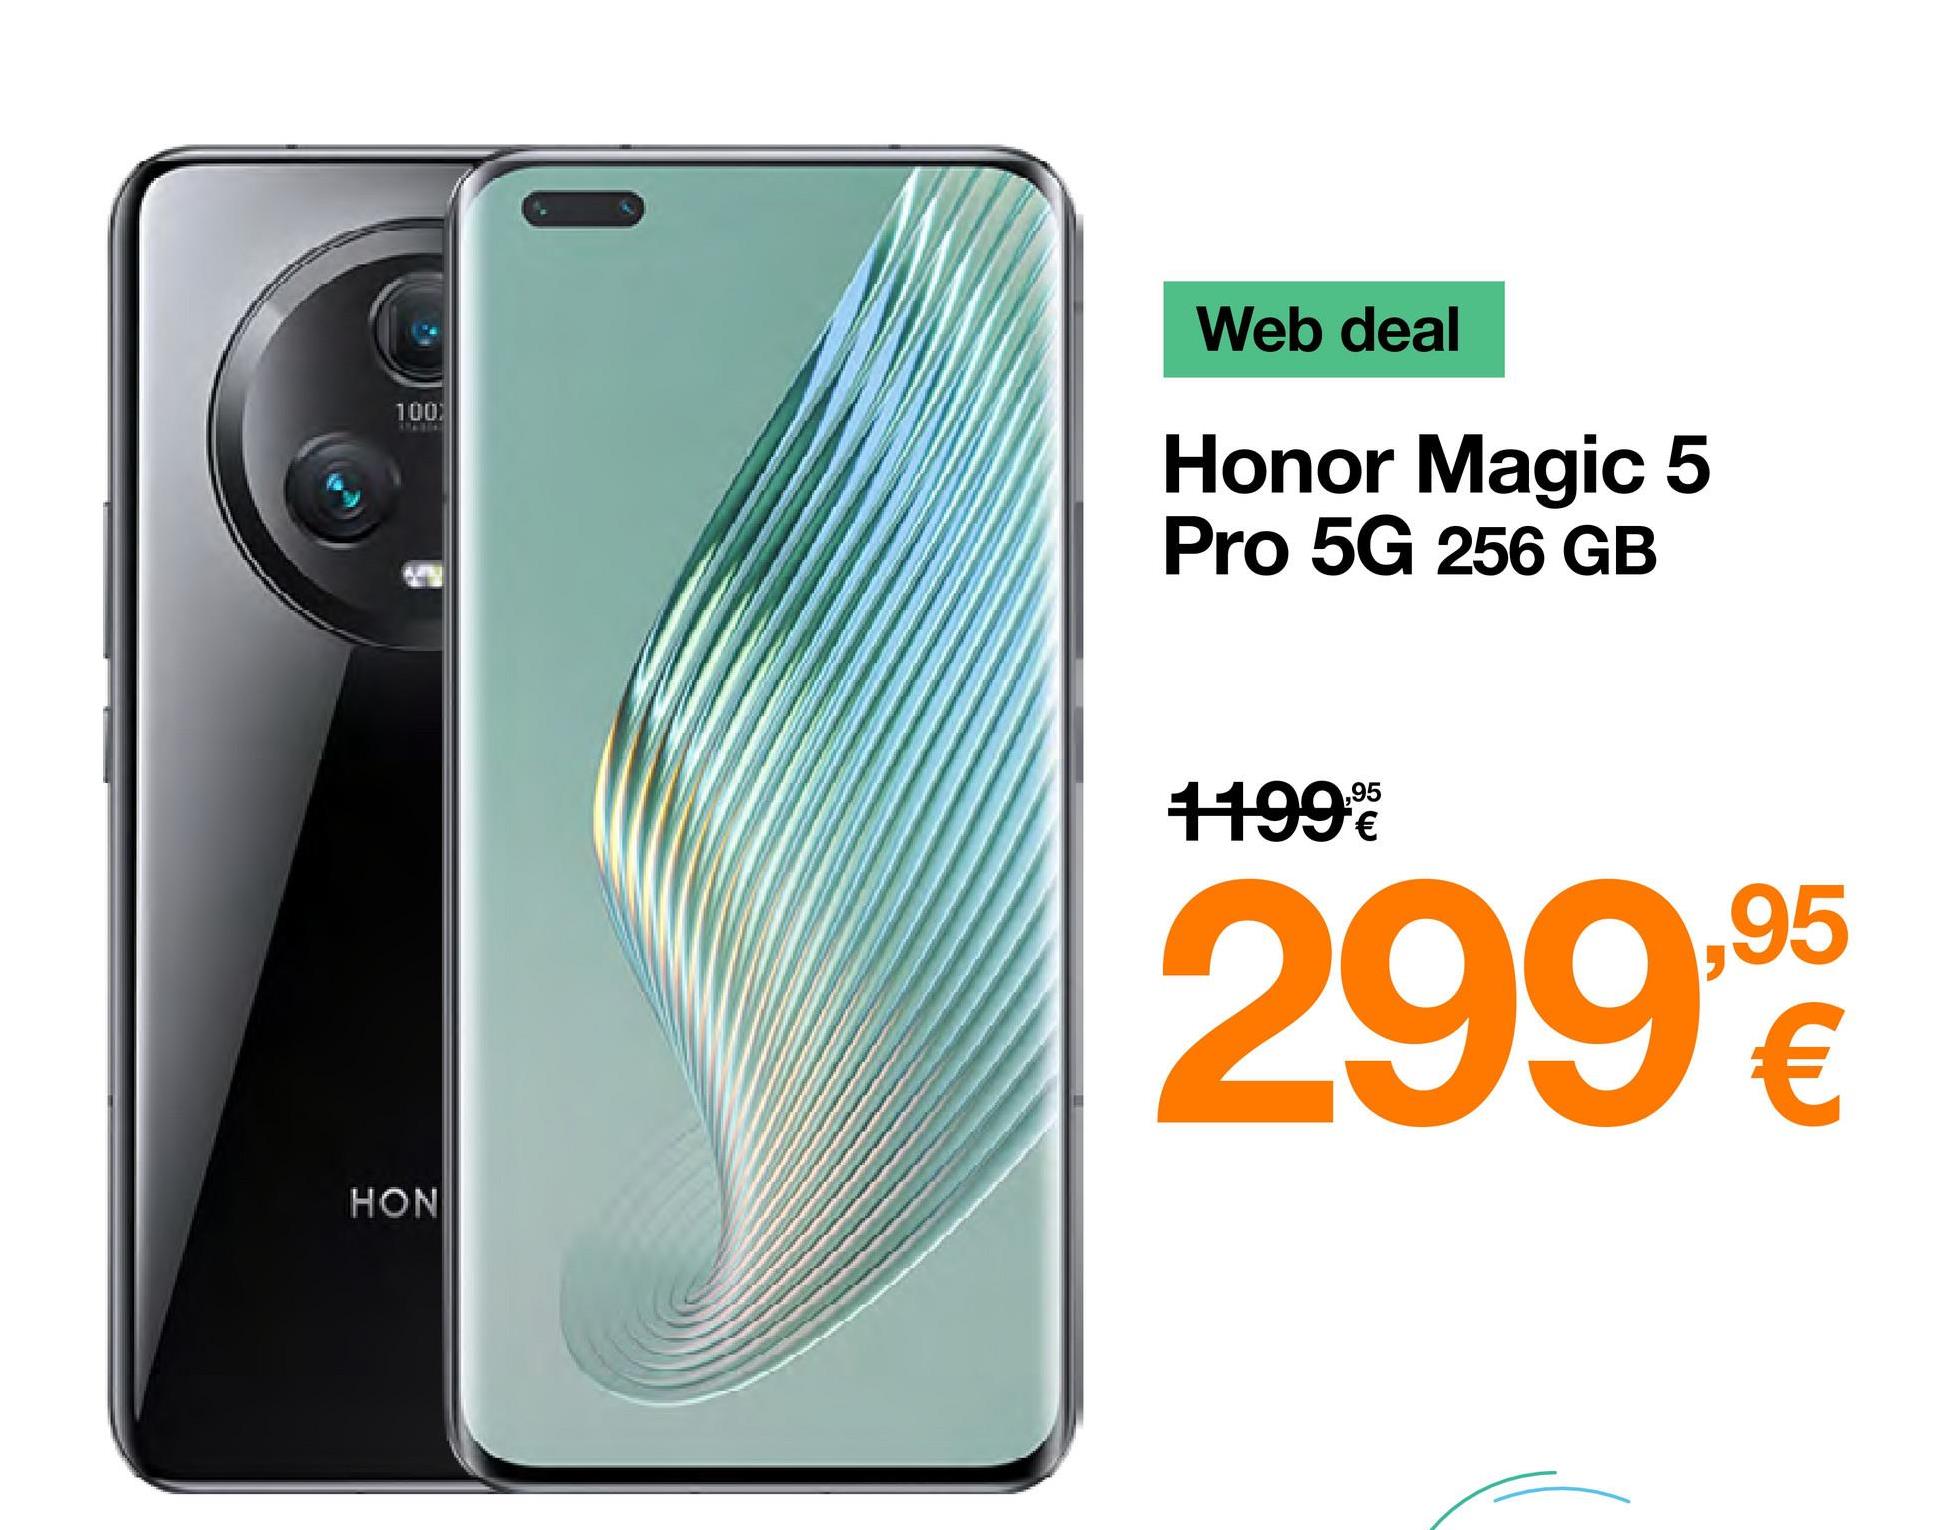 100
HON
Web deal
Honor Magic 5
Pro 5G 256 GB
11999
299,90
€